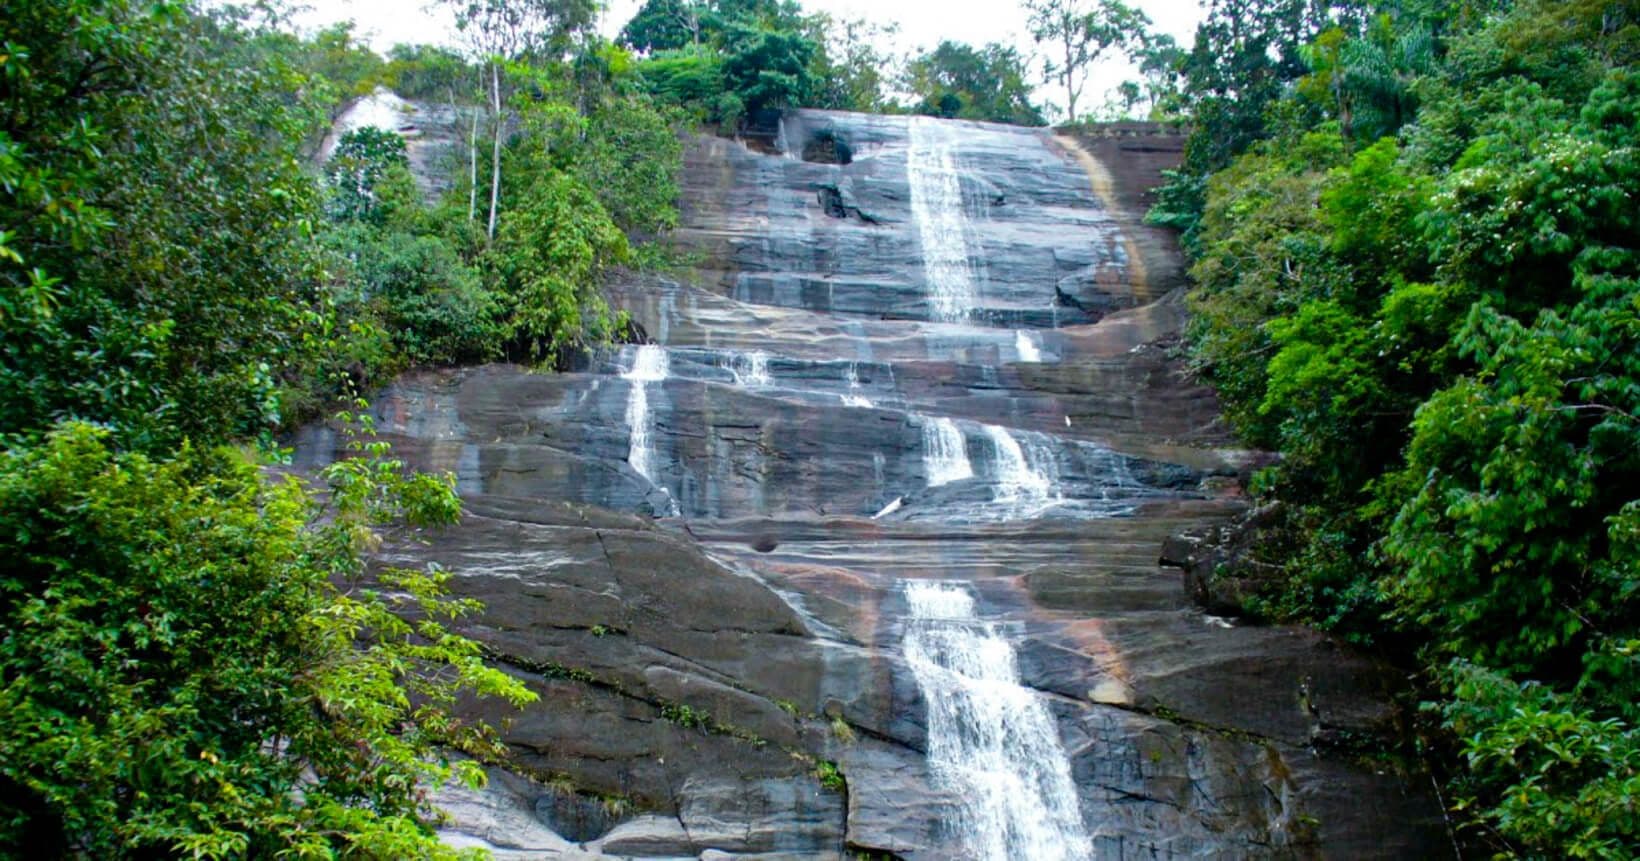 The beautiful view of Hadunella Waterfall in Kithulgala abseiling area in Sri Lanka